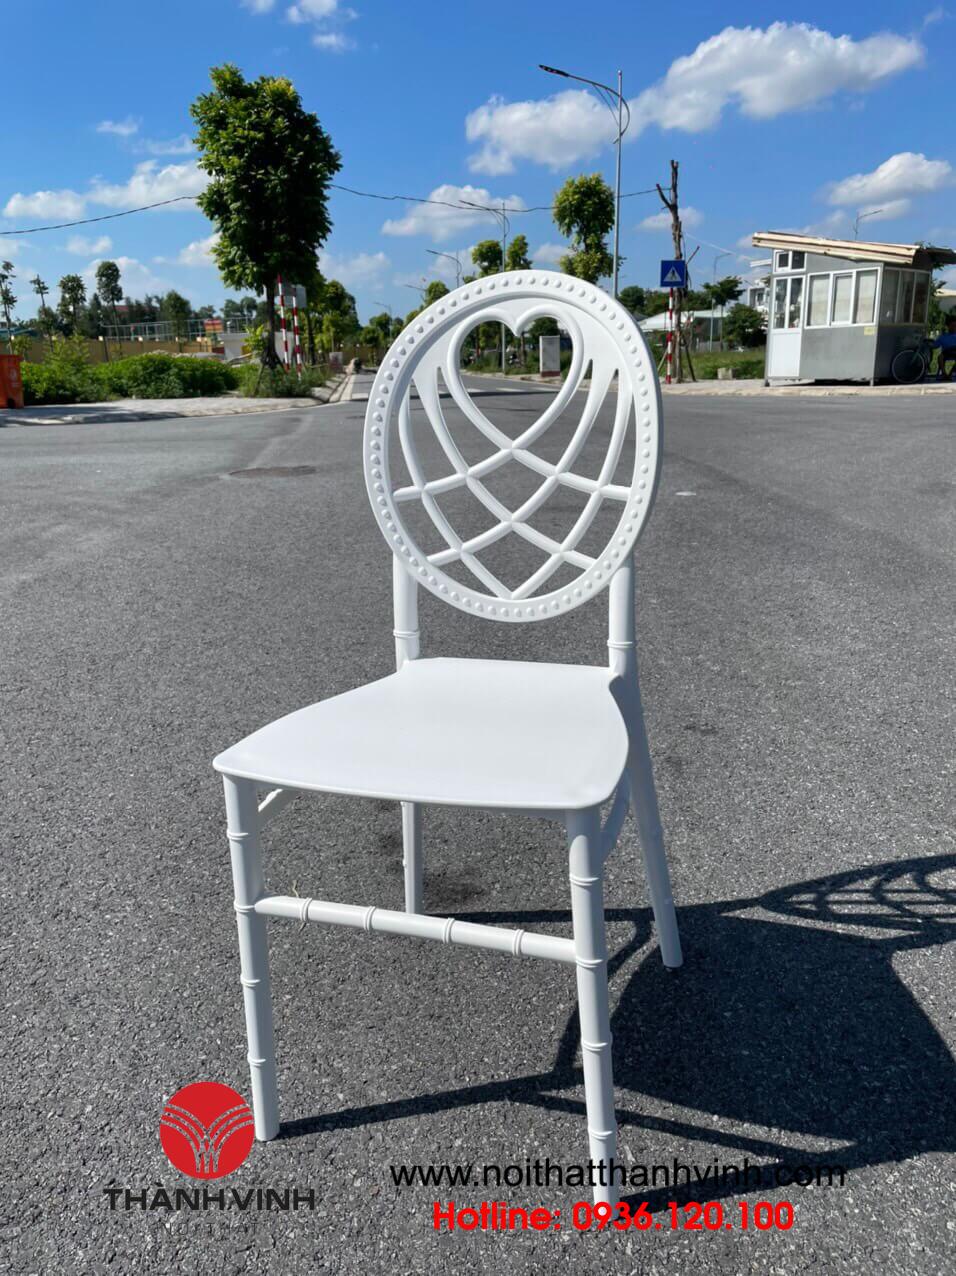 Ghế louis nhựa với lưng ghế thiết kế tỉ mỉ và chắc chắn